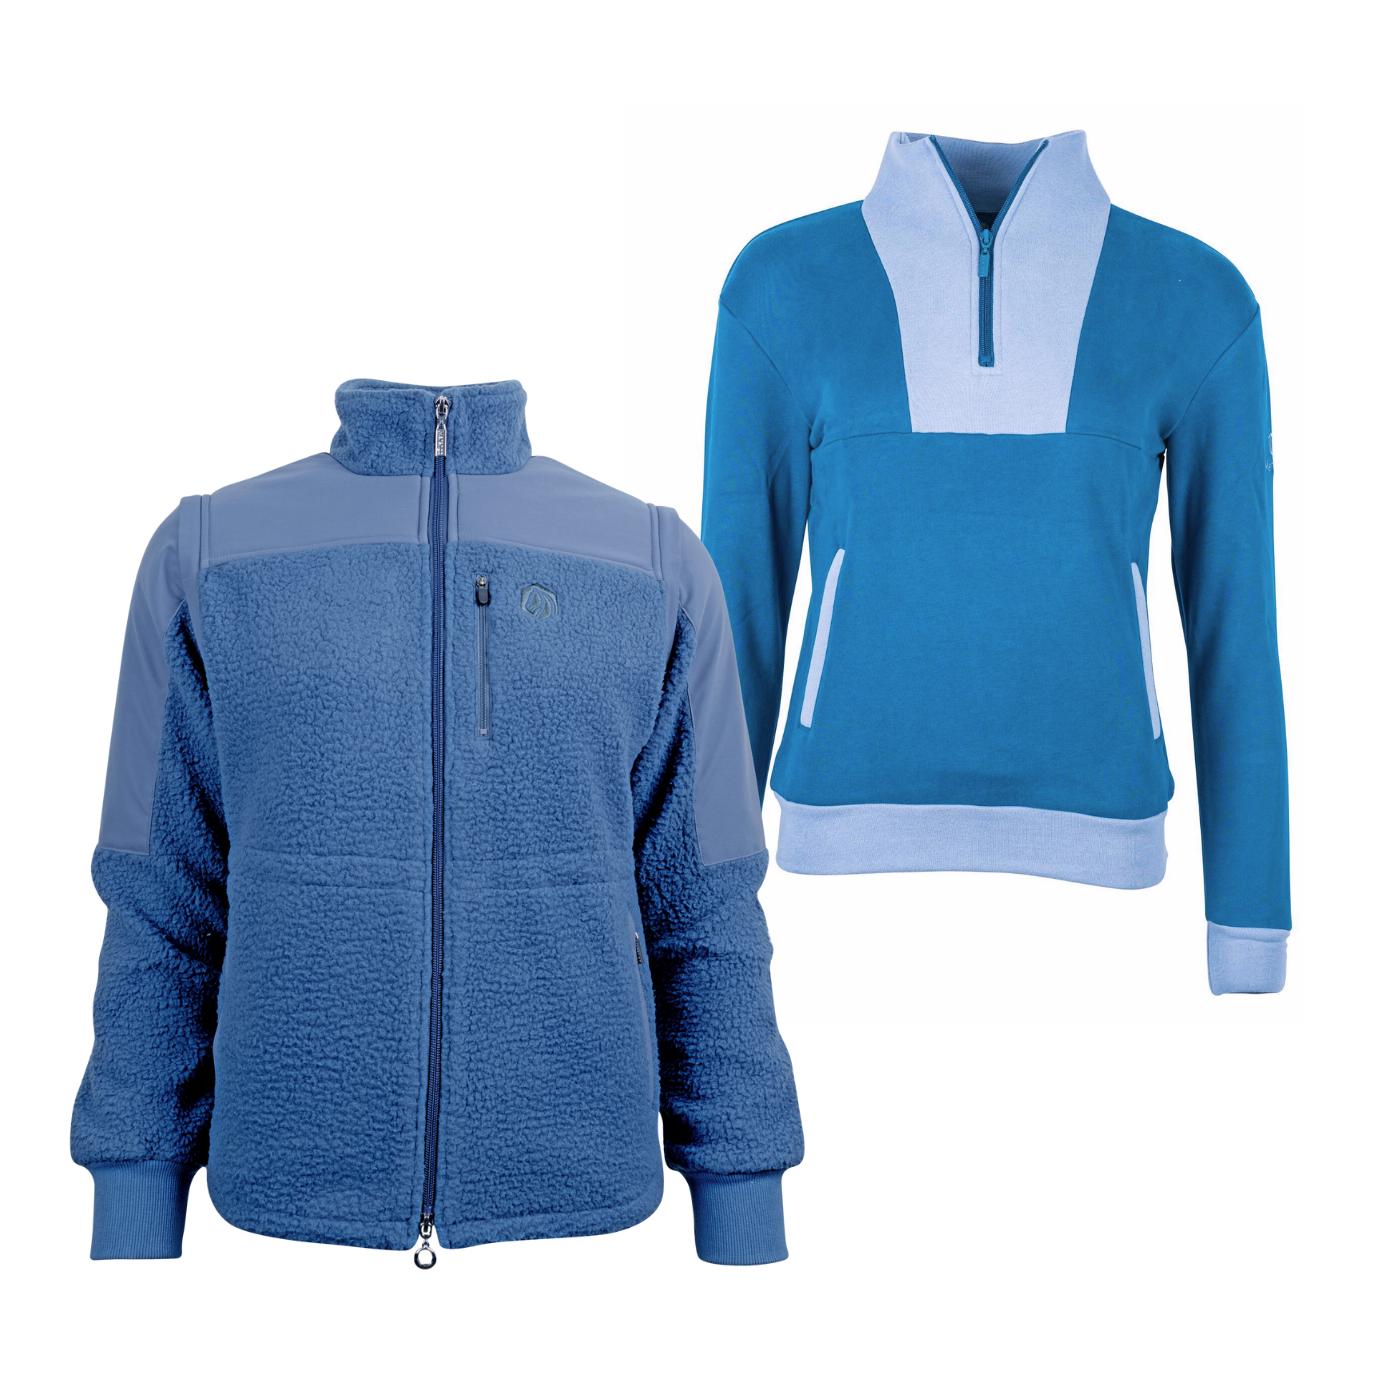 Marengo Outfit-Set Cosy Rides - Teddyfleece-Jacke & Zip Sweatshirt Farbe: Calm Blue / Ocean Blue, Grösse Jacke: XXL, Grösse Pullover: XS von Marengo